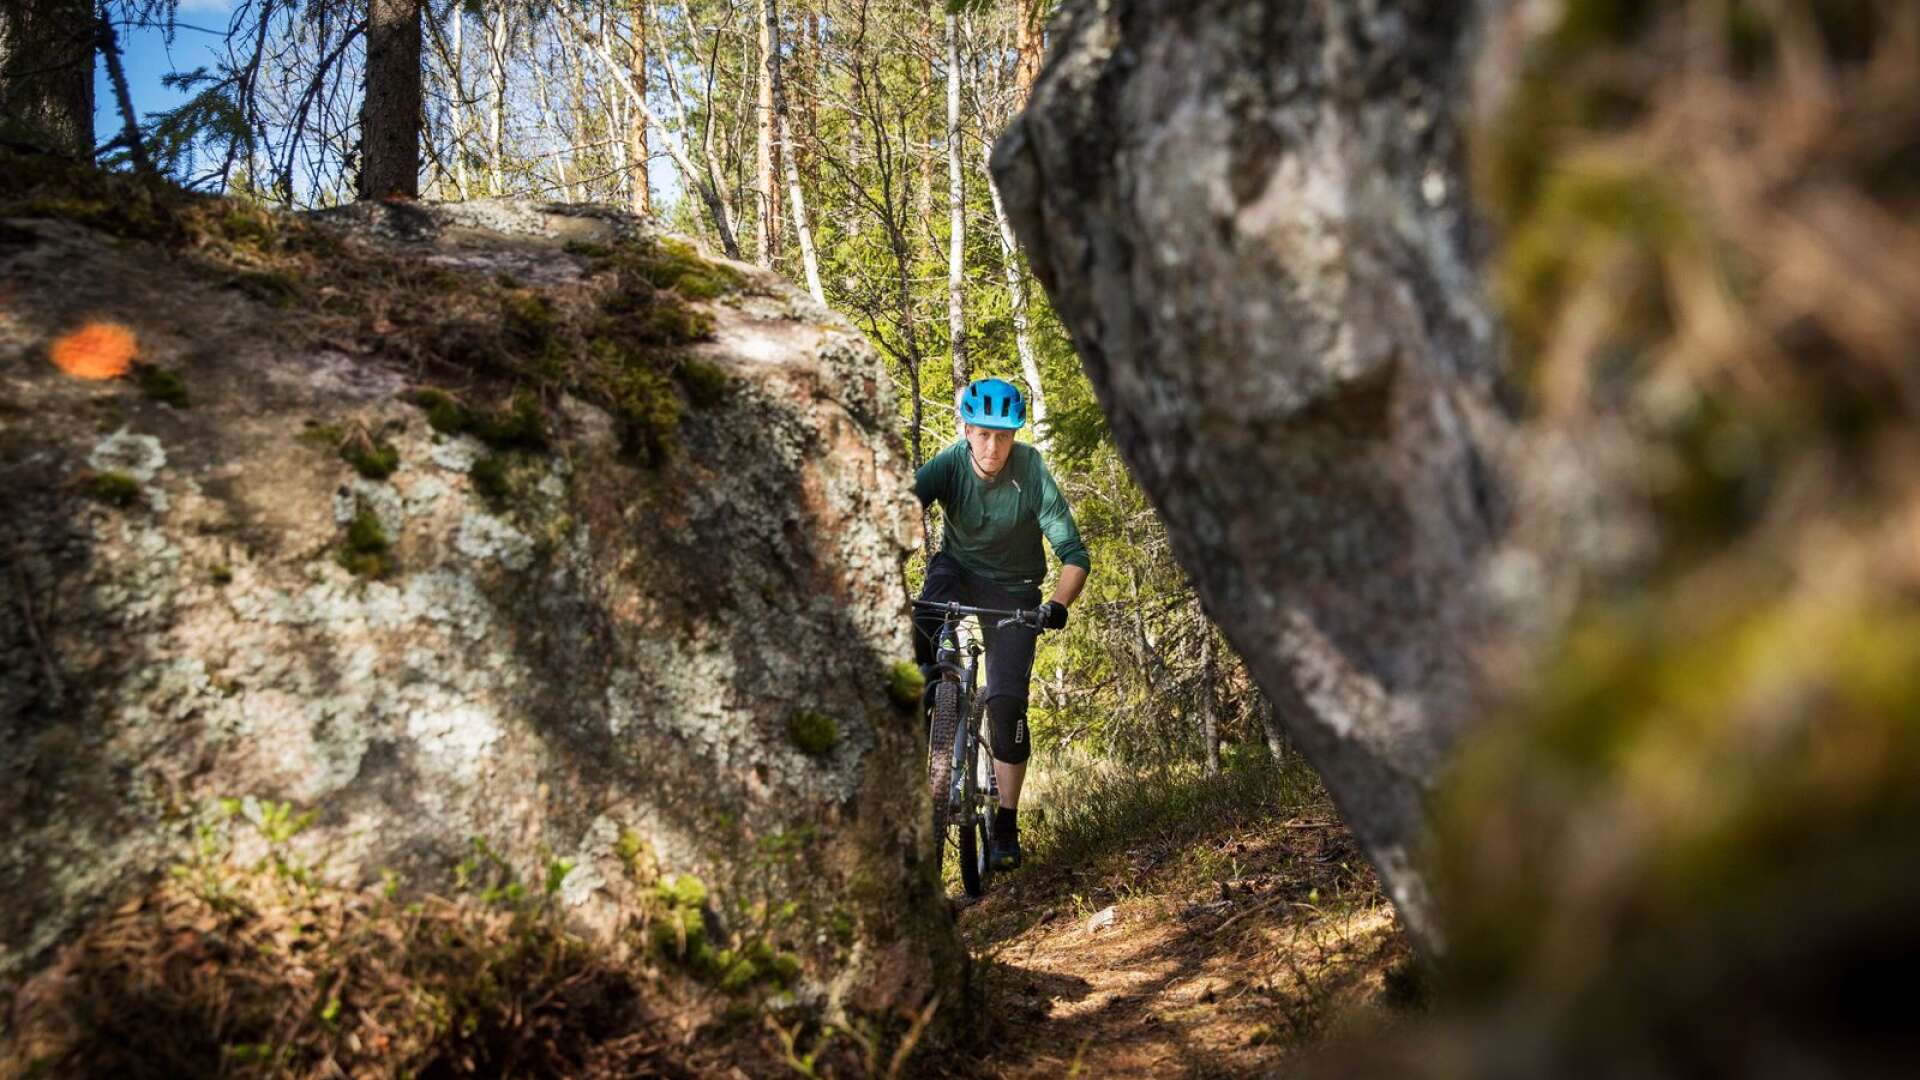 Vandrarna har redan sina kvalitetsmärkta leder. Nu tar mountainbikecyklisterna efter. 
Projektet kallas Biking Värmland. &quot;En kombinationsled där vi visar hänsyn till varandra&quot;, säger Niklas Andersson, Gunnarskogsbo och mountainbikecyklist som visar Södra Gunnarskogsleden. 